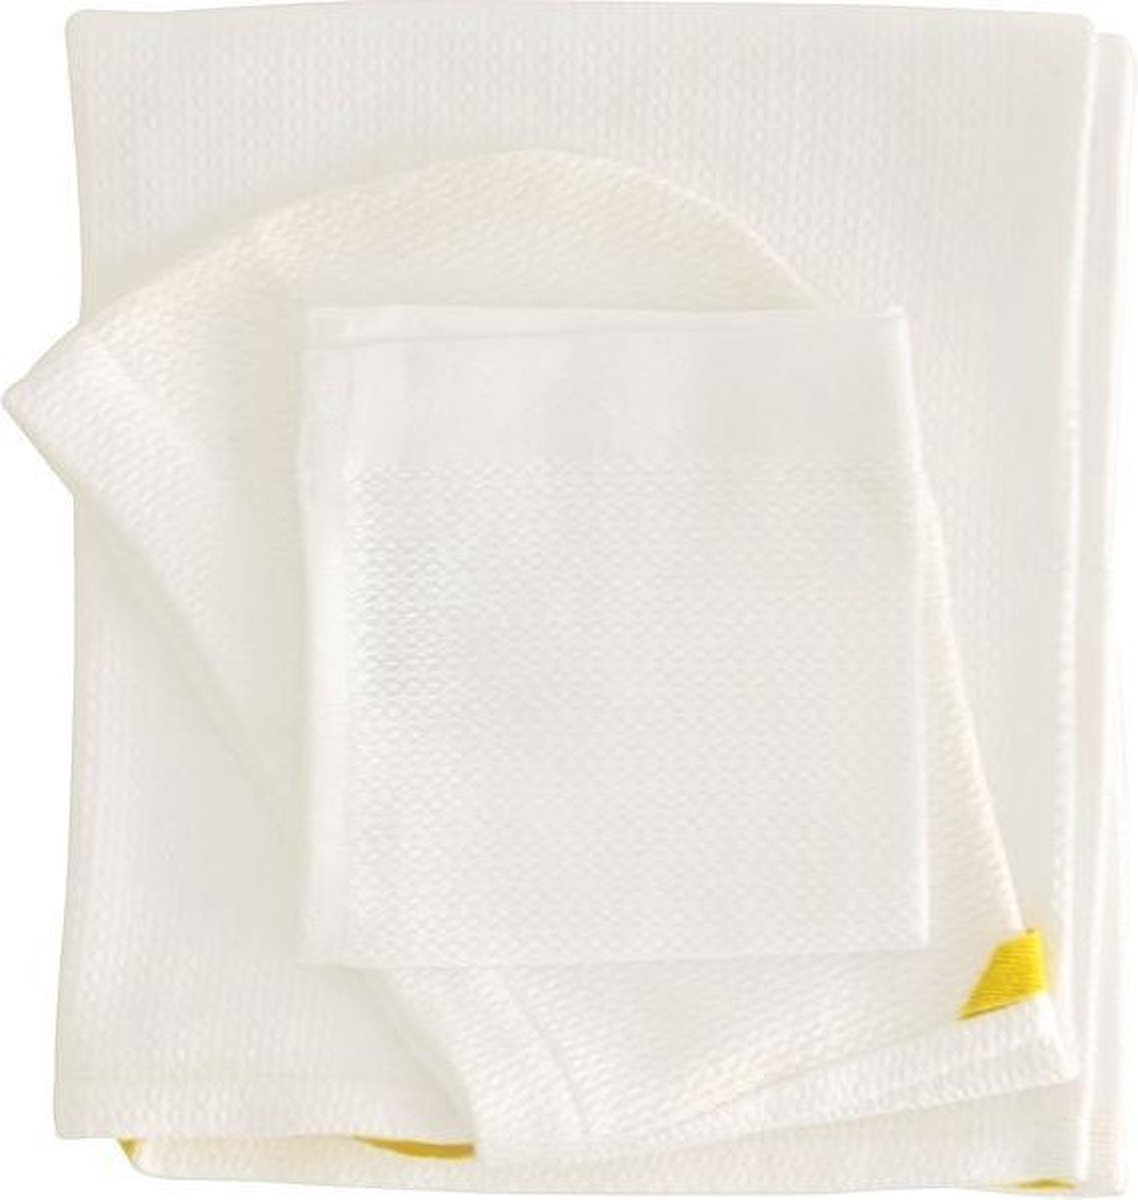 [by EKOBO] Baby handdoek en washand - White